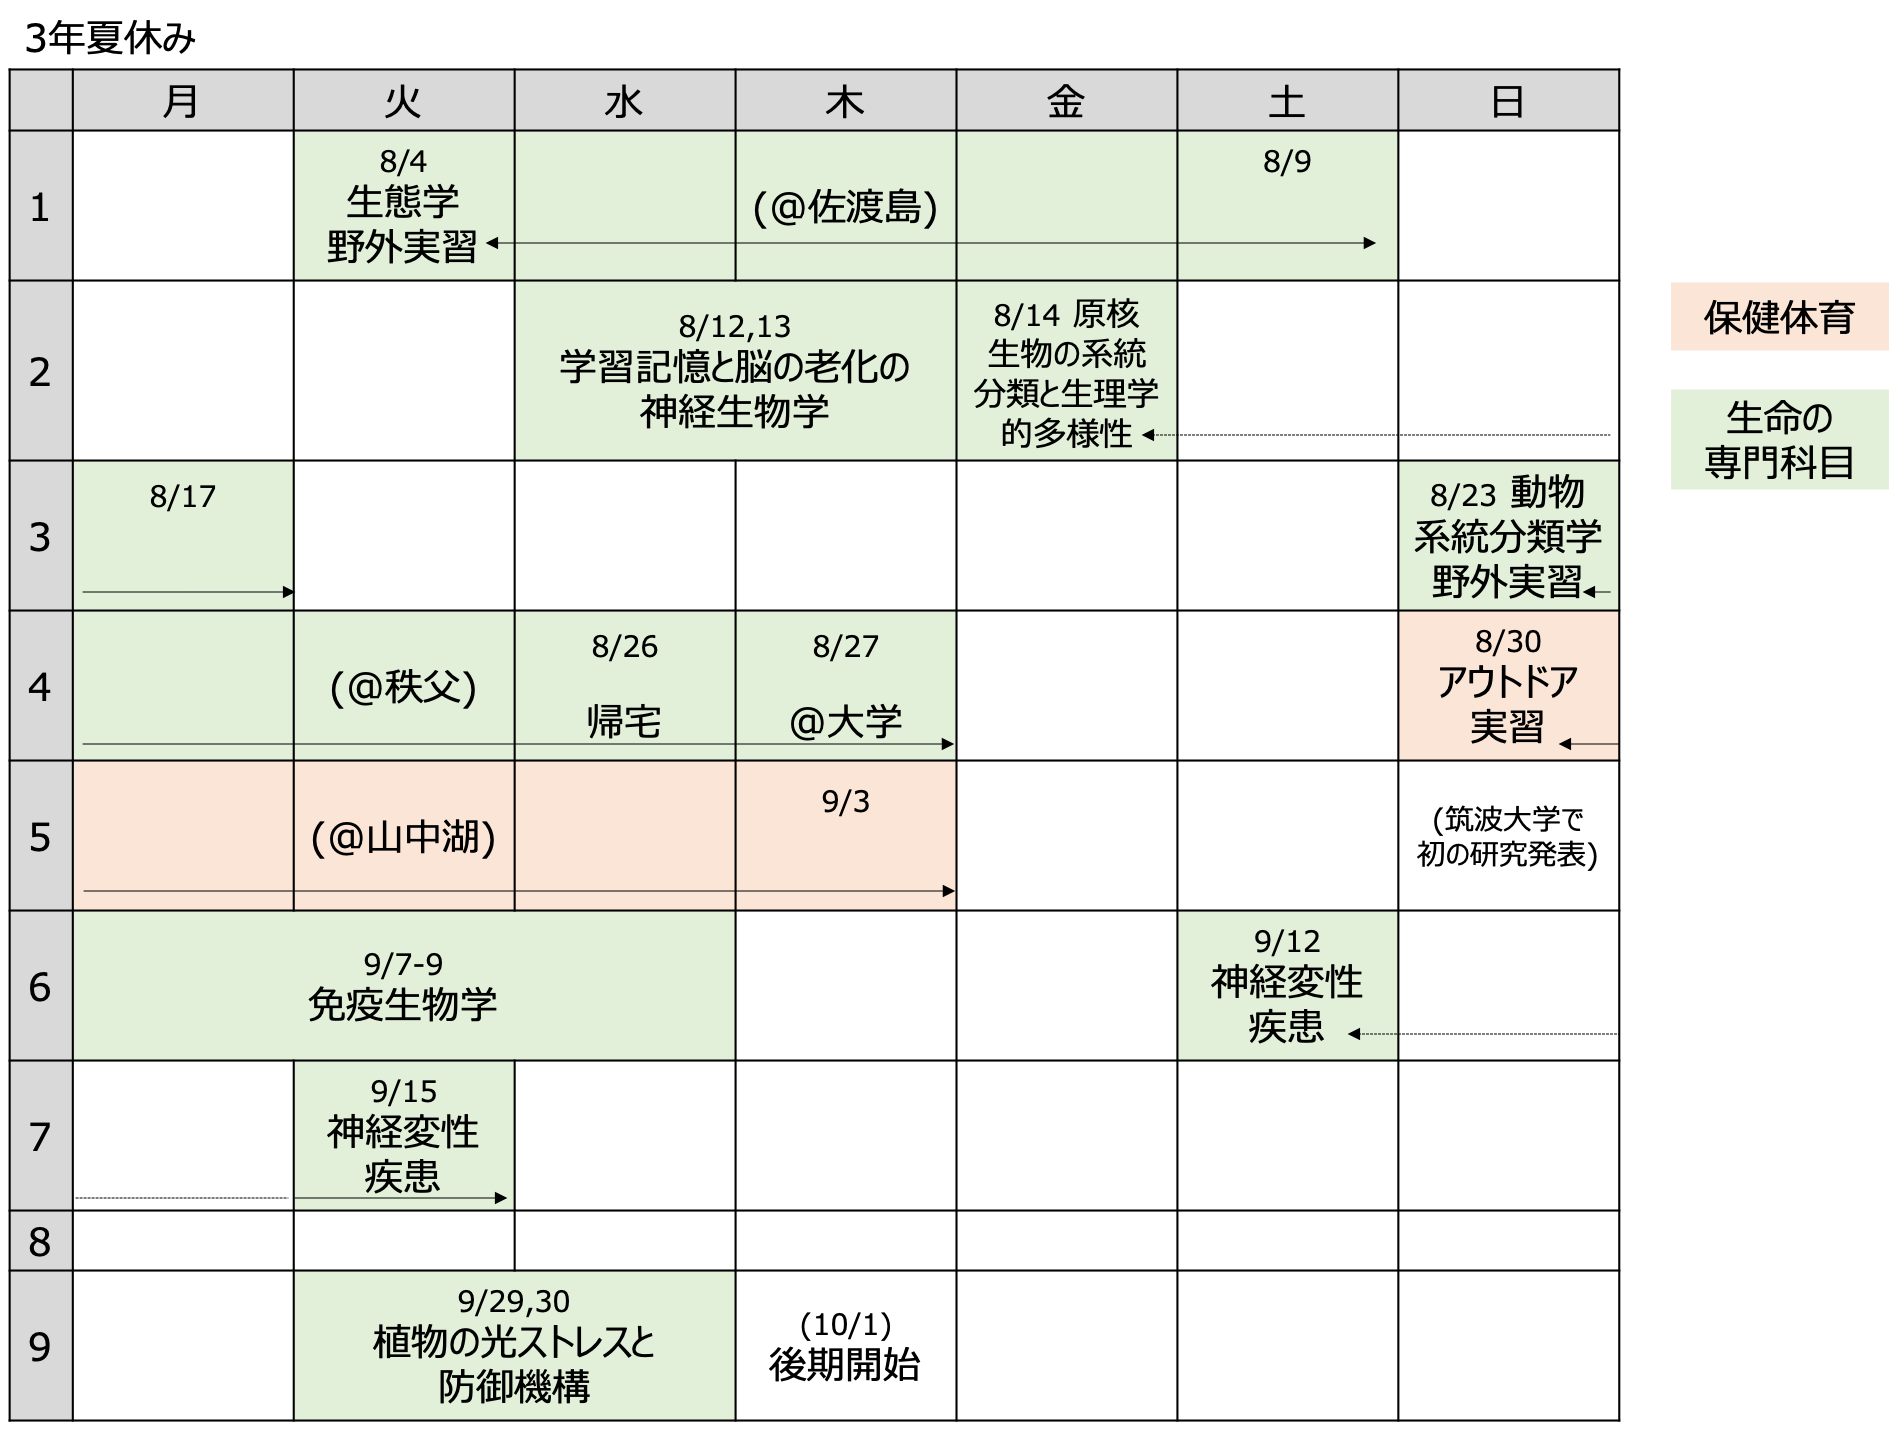 早期 卒業 大学 金沢工業大学 早期卒業に関する規程